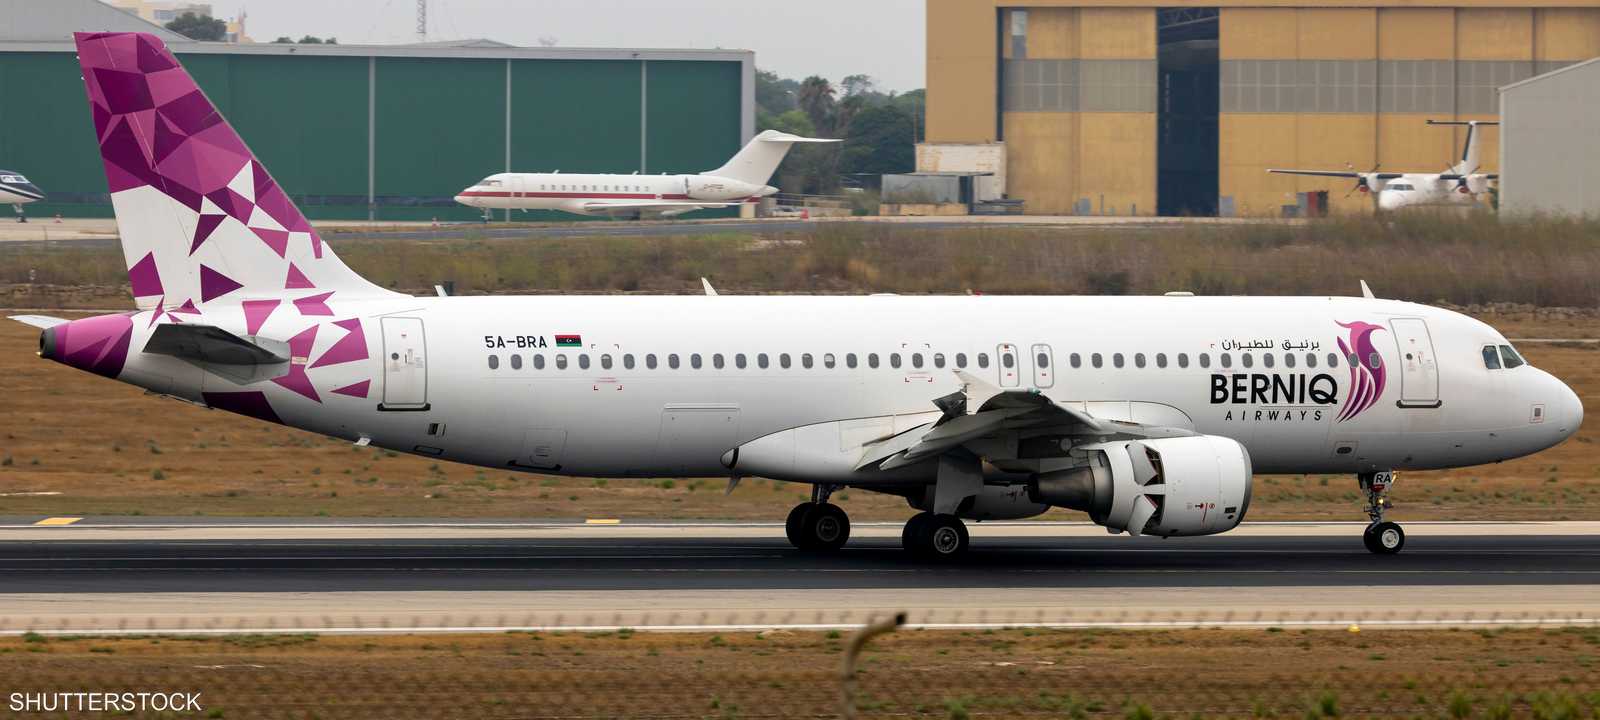 طائرة تابعة لشركة برنيق للطيران الليبية